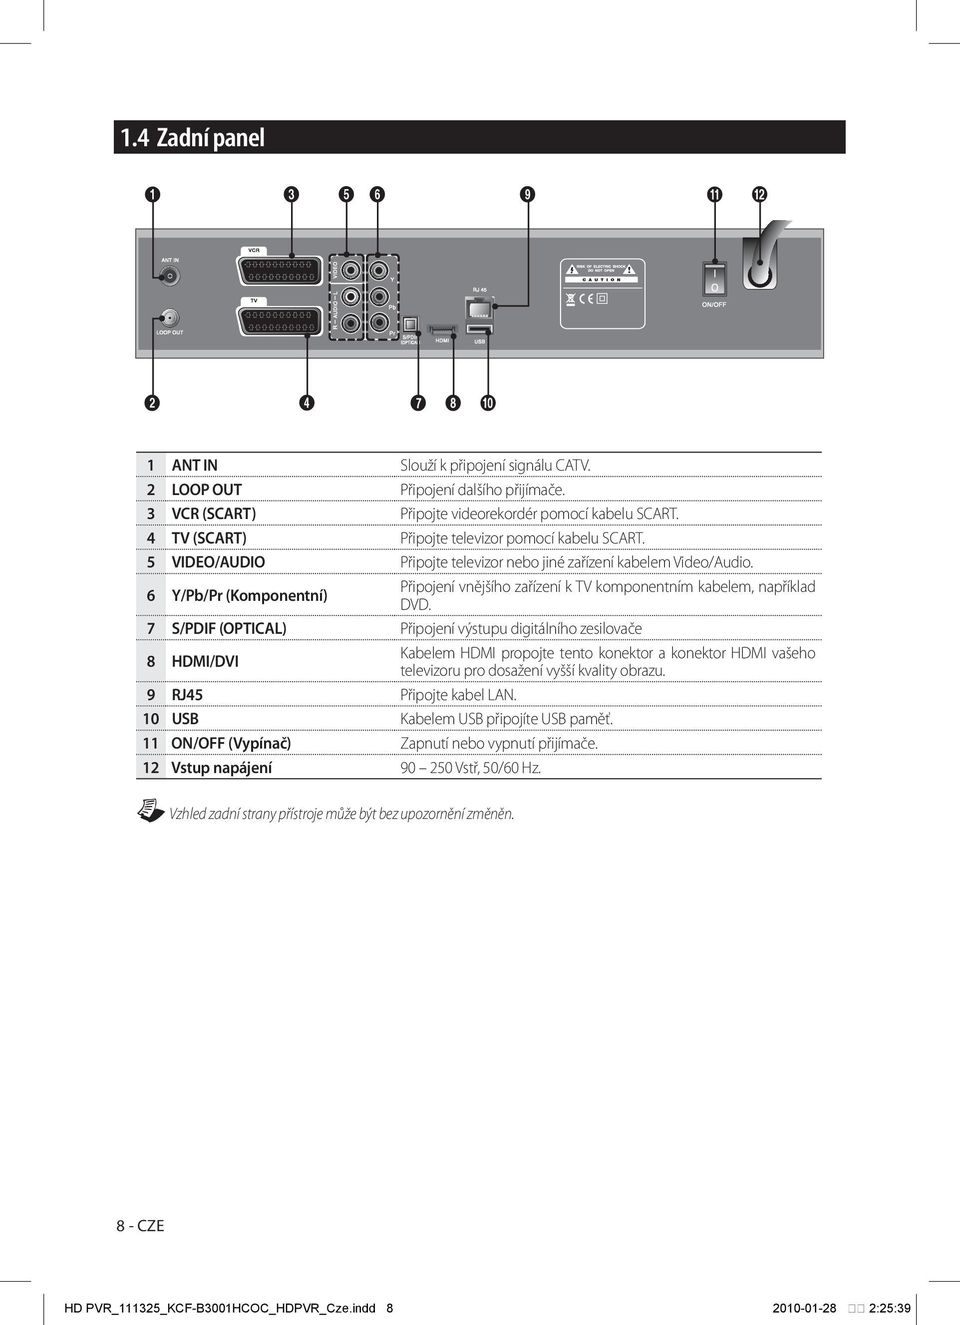 6 Y/Pb/Pr (Komponentní) Připojení vnějšího zařízení k TV komponentním kabelem, například DVD.